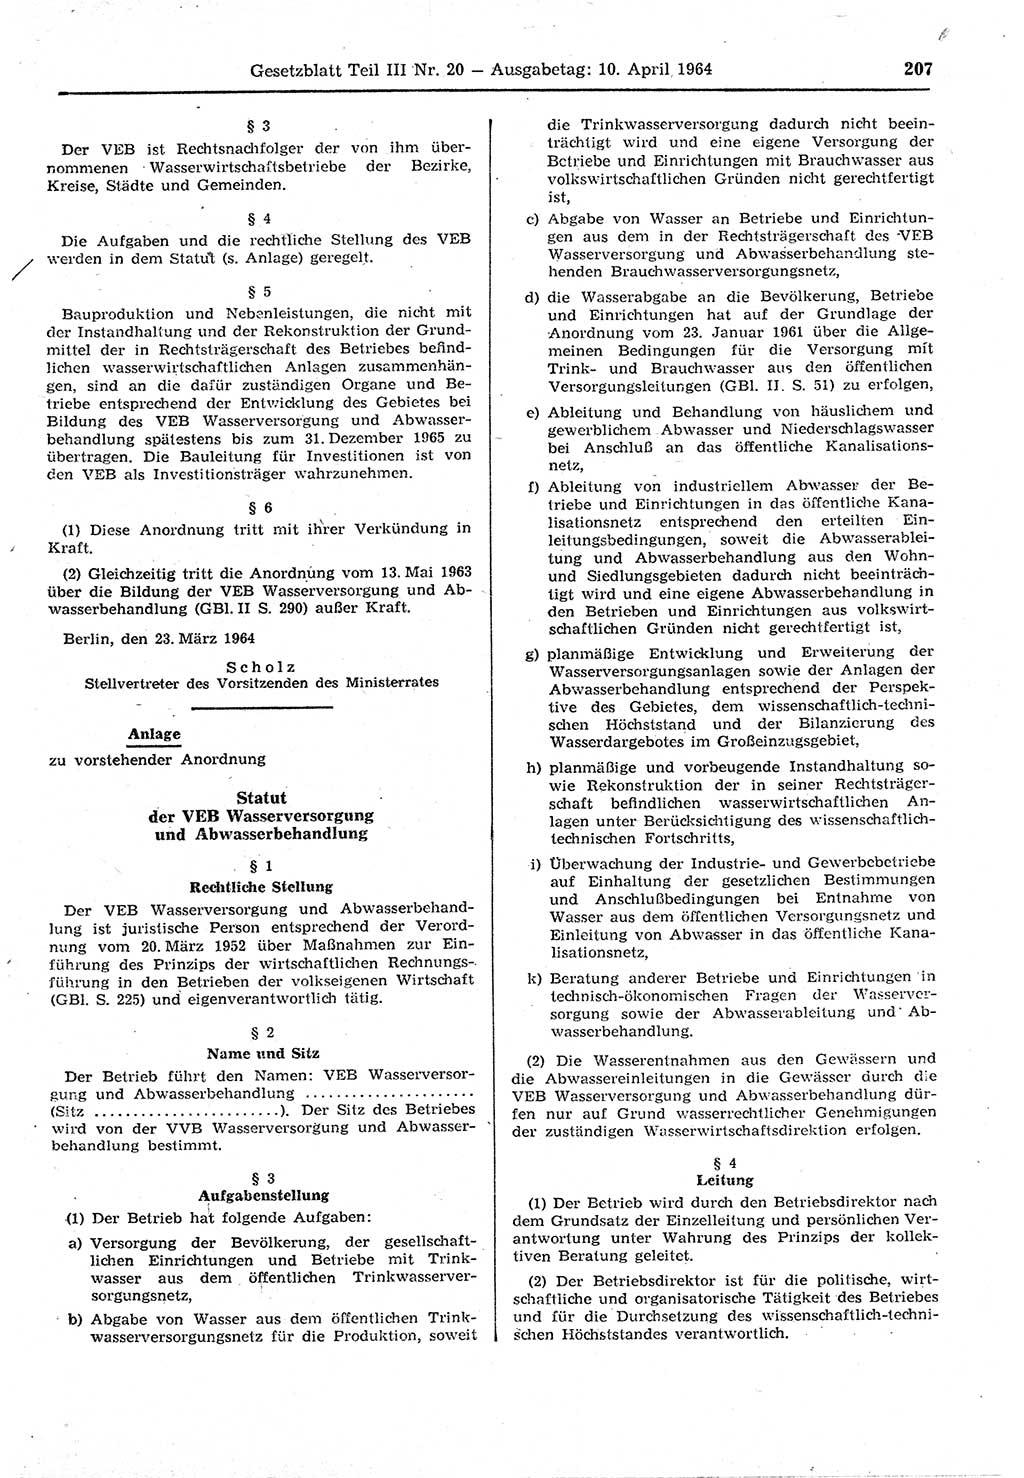 Gesetzblatt (GBl.) der Deutschen Demokratischen Republik (DDR) Teil ⅠⅠⅠ 1964, Seite 207 (GBl. DDR ⅠⅠⅠ 1964, S. 207)